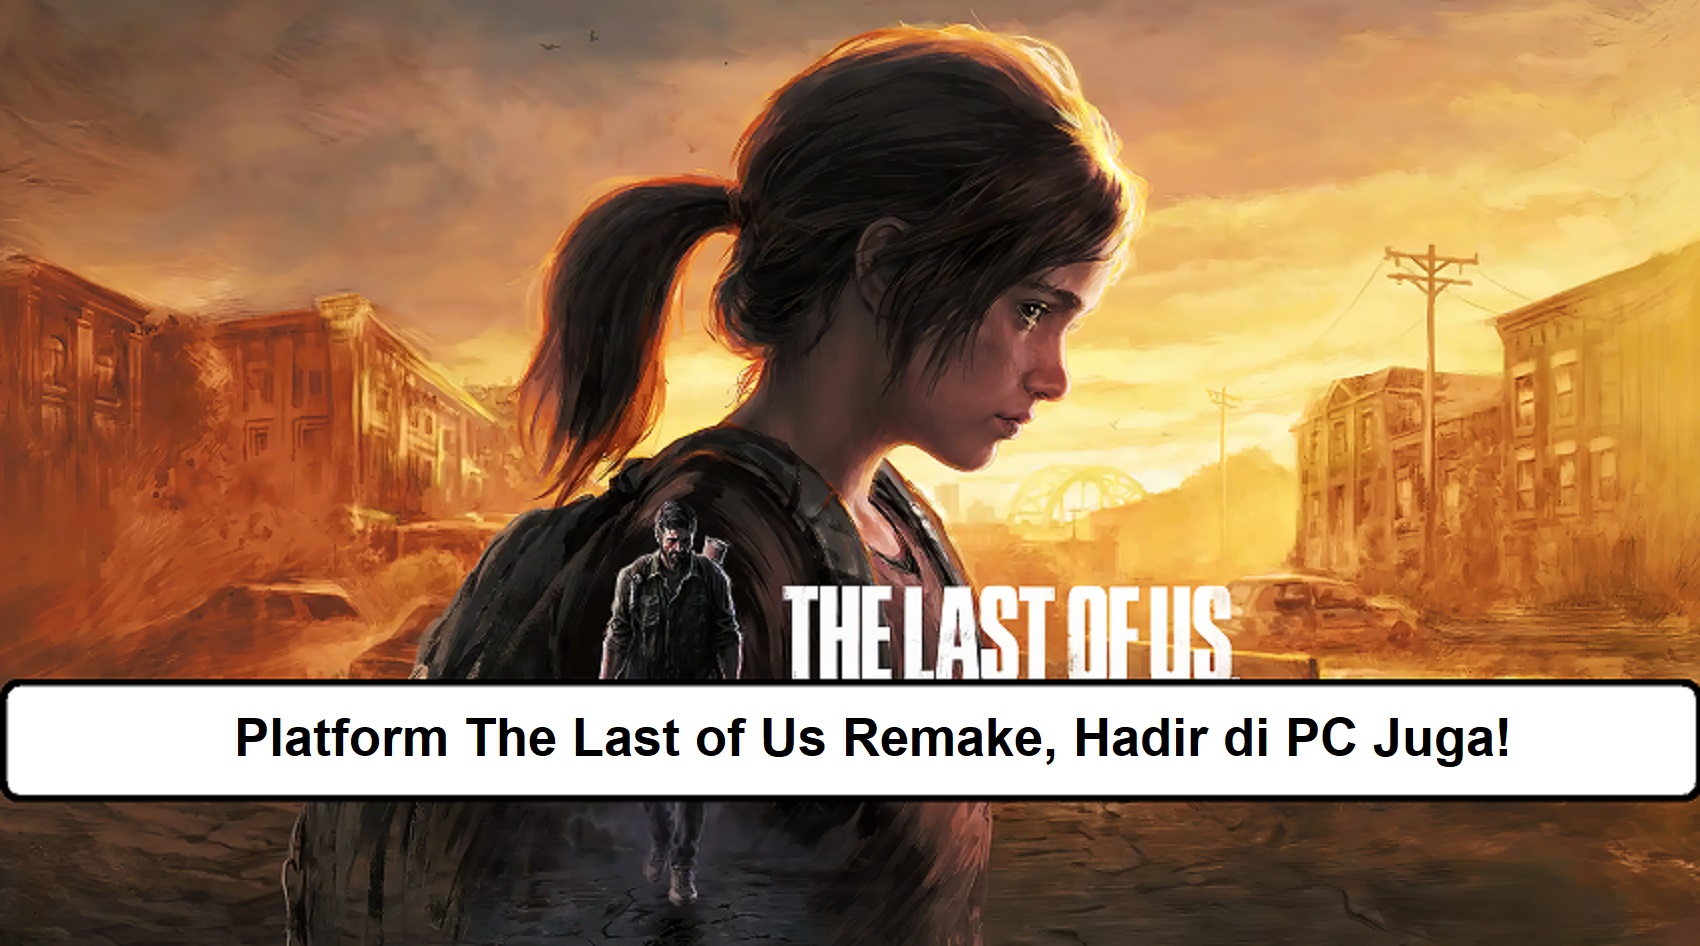 Platform The Last of Us Remake, Hadir di PC Juga!